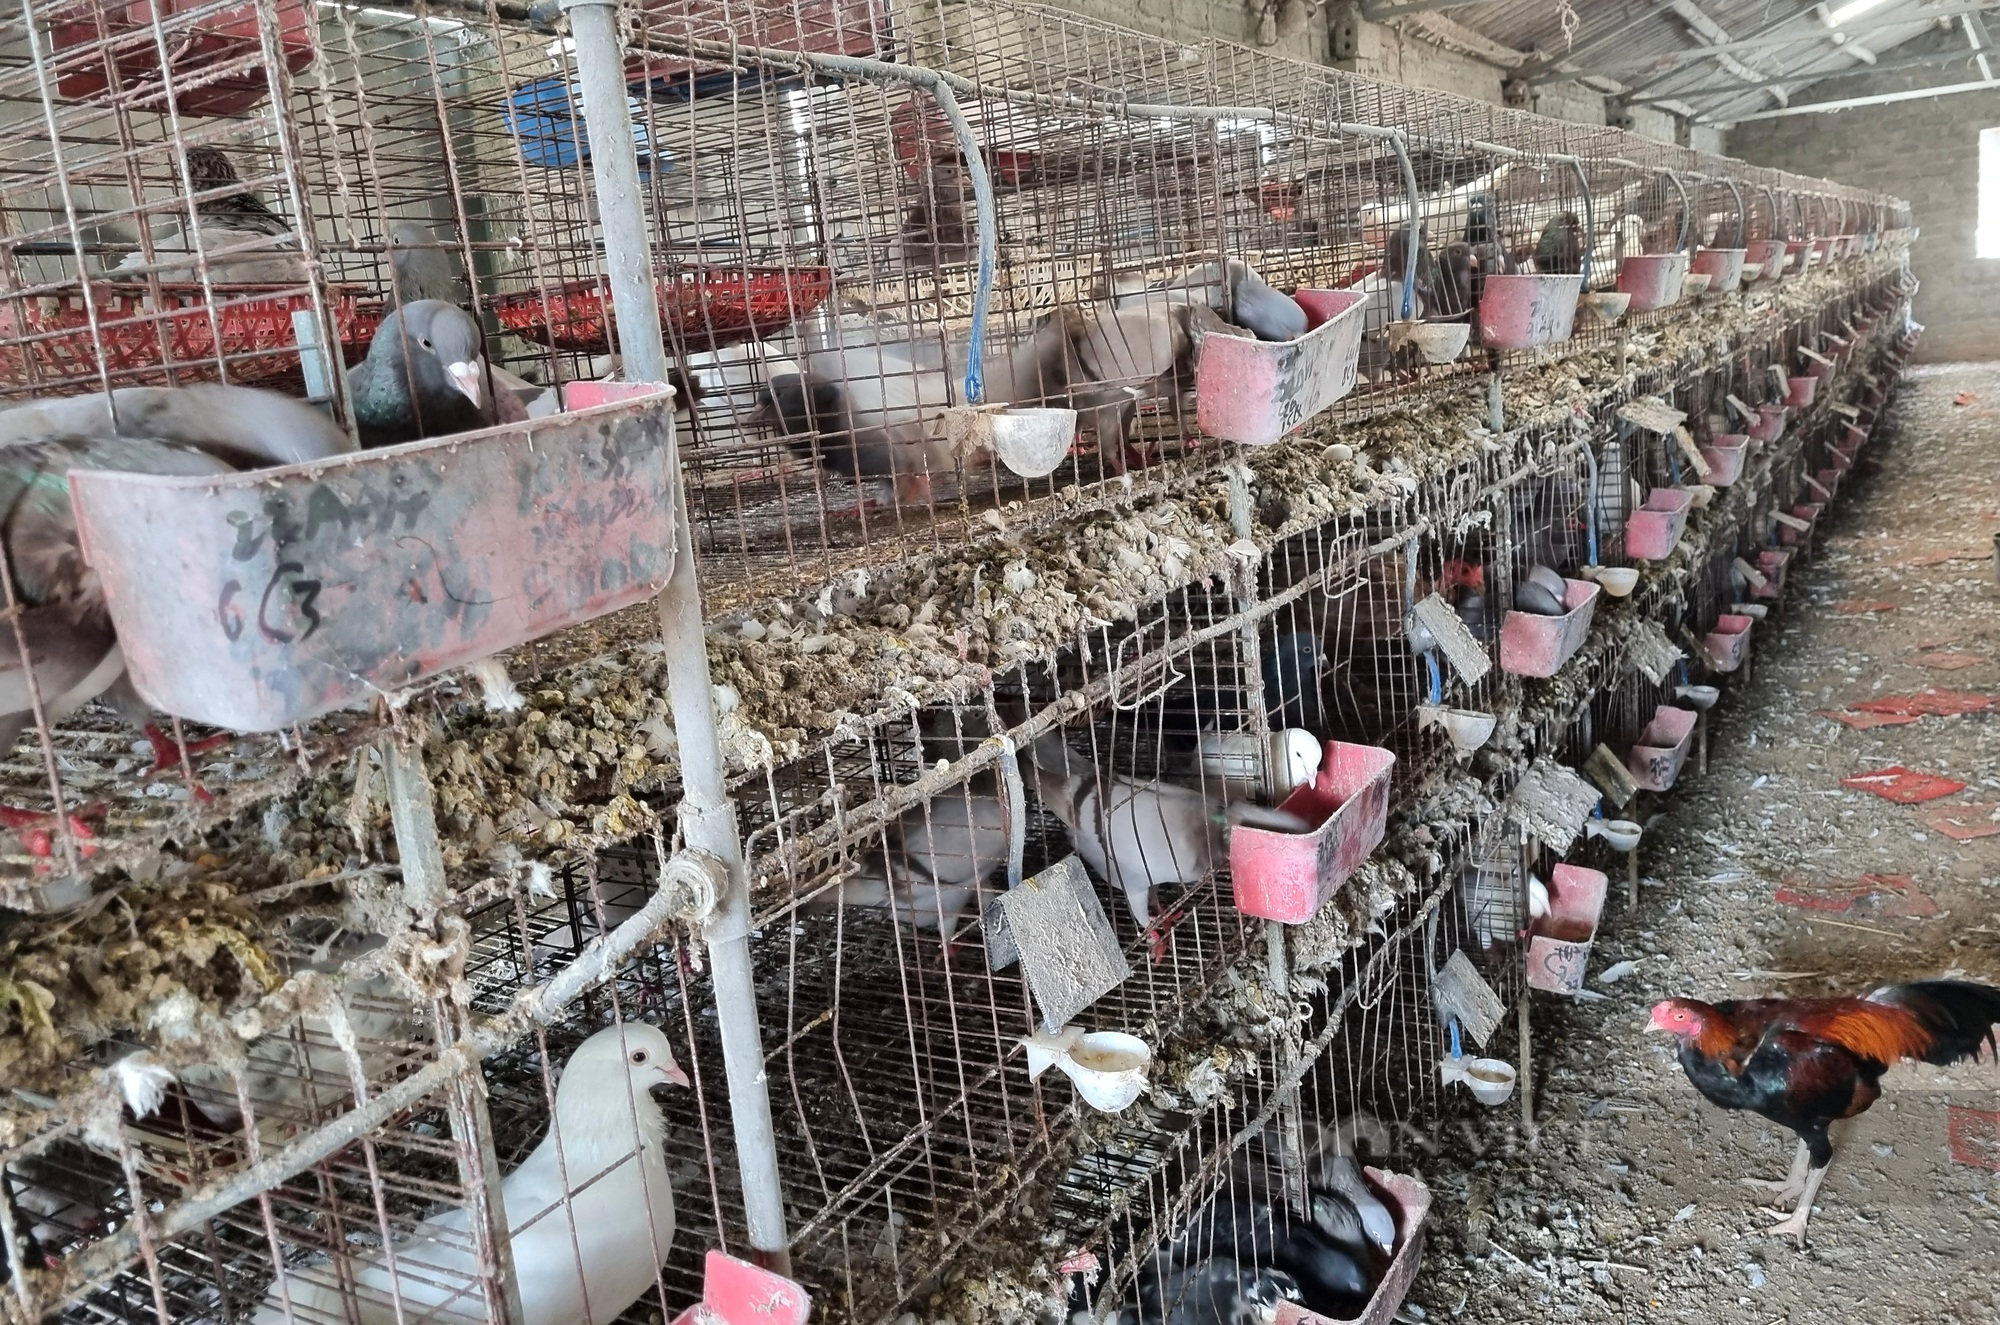 9X Ninh Bình nuôi chim bồ câu Pháp lãi 400 triệu đồng/năm - Ảnh 5.